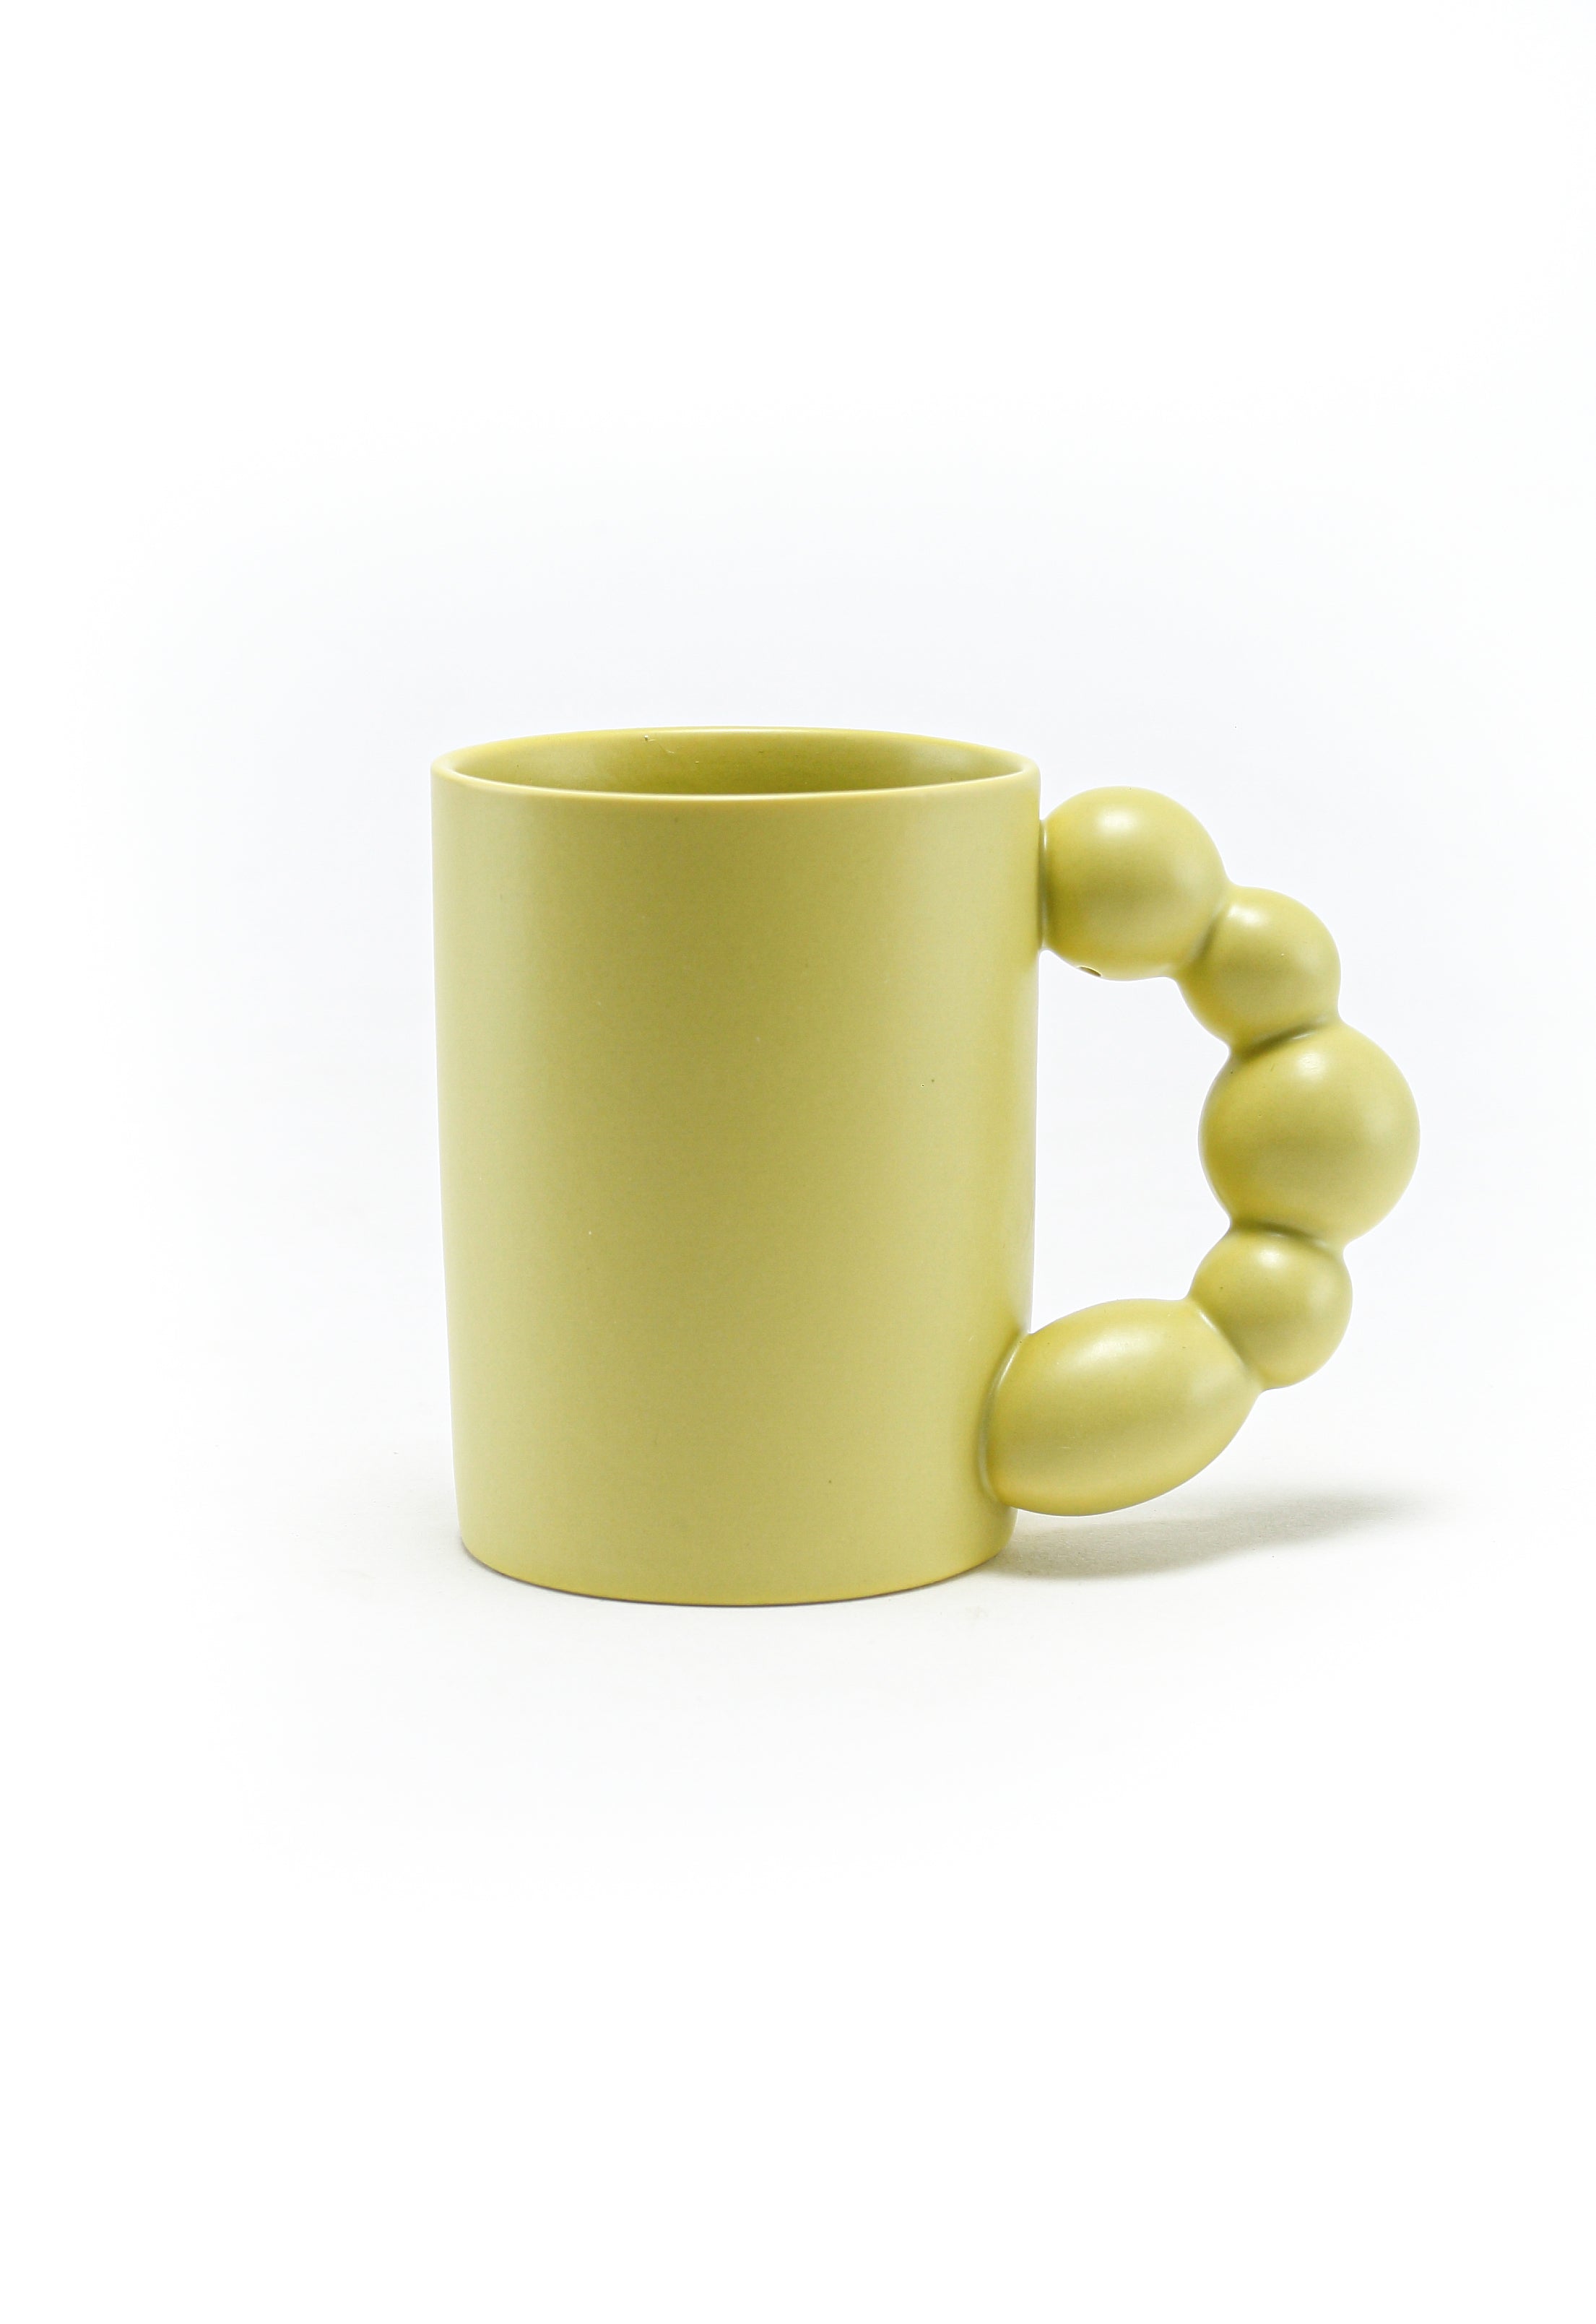 Pixa Pod chunky ball handled mug Lemon Green